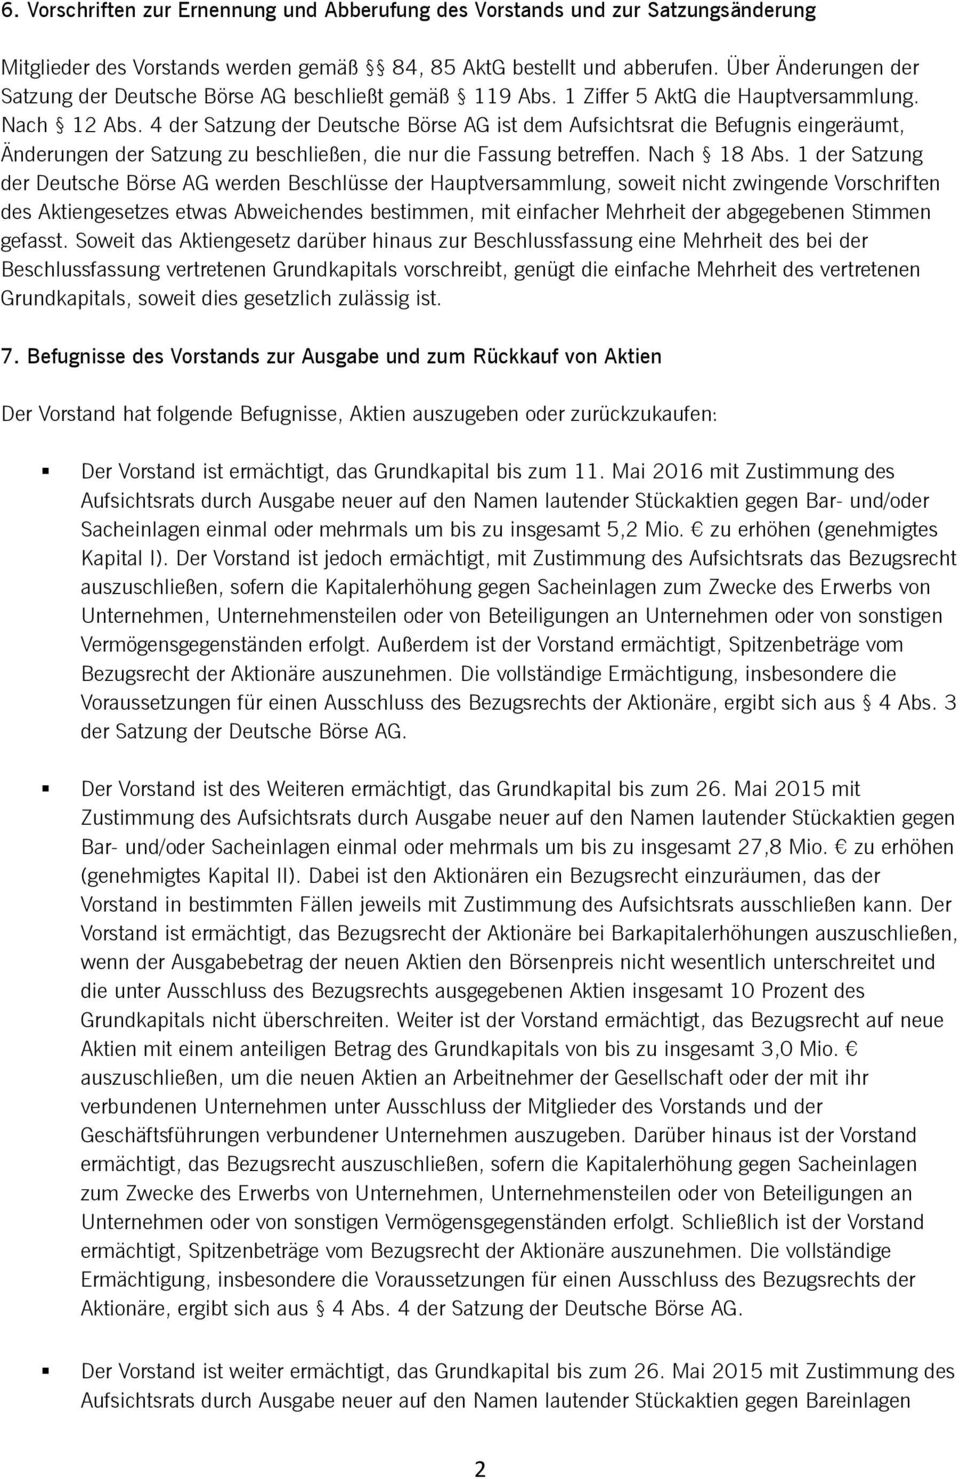 4 der Satzung der Deutsche Börse AG ist dem Aufsichtsrat die Befugnis eingeräumt, Änderungen der Satzung zu beschließen, die nur die Fassung betreffen. Nach 18 Abs.